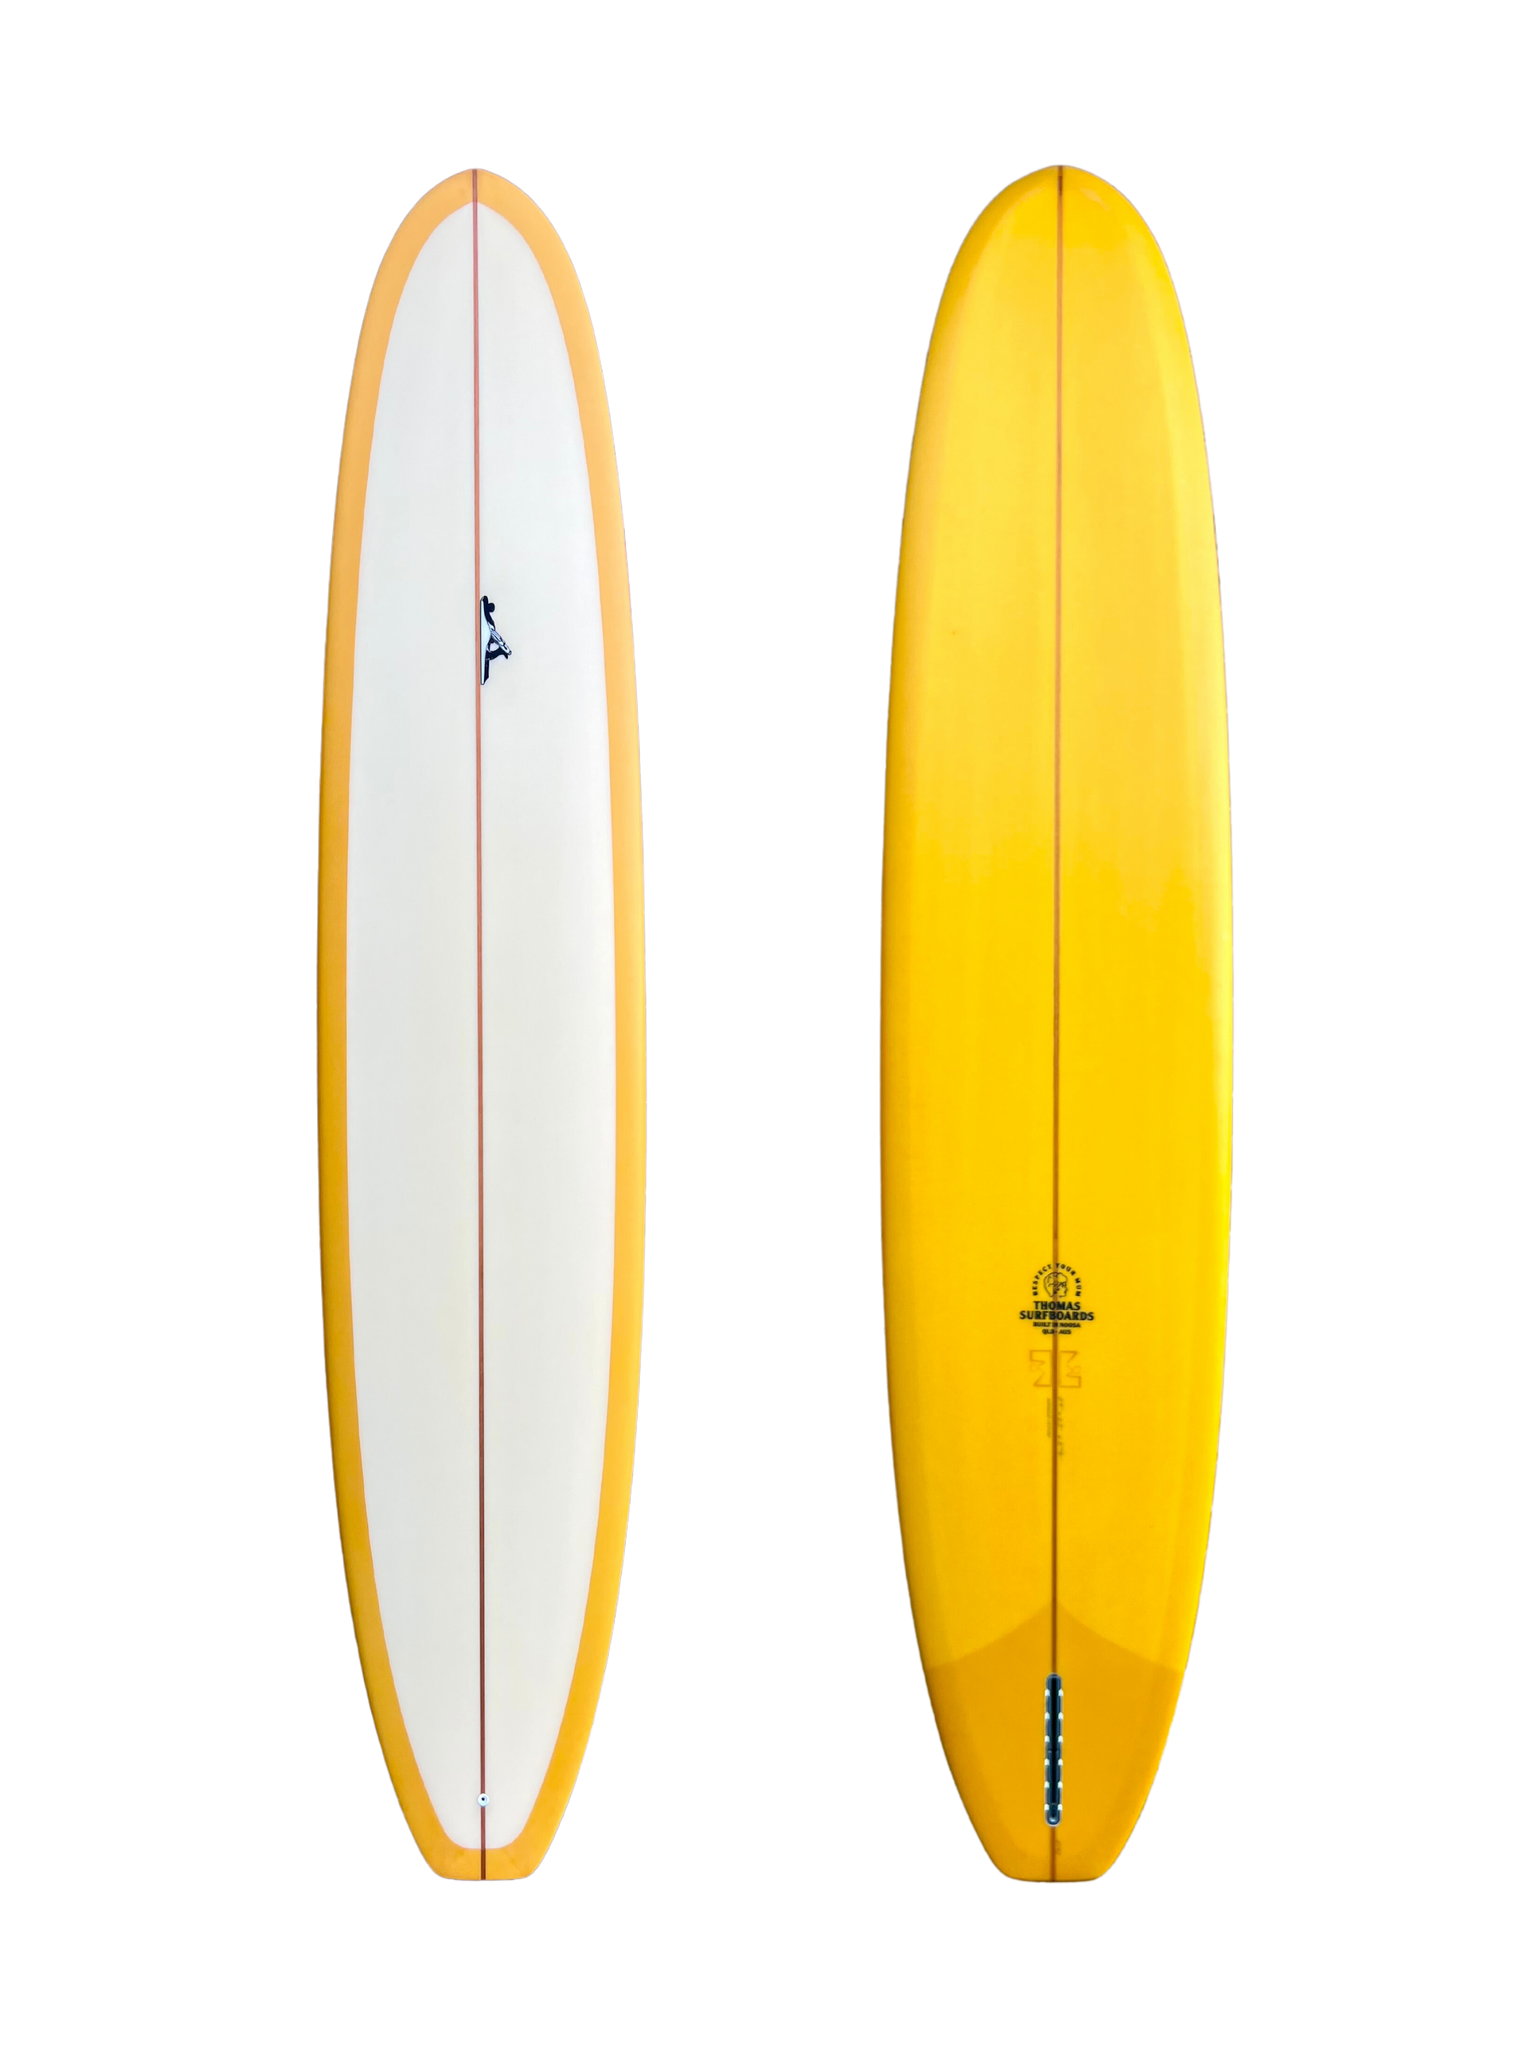 Thomas Bexton Surfboards Harrison 9'6"